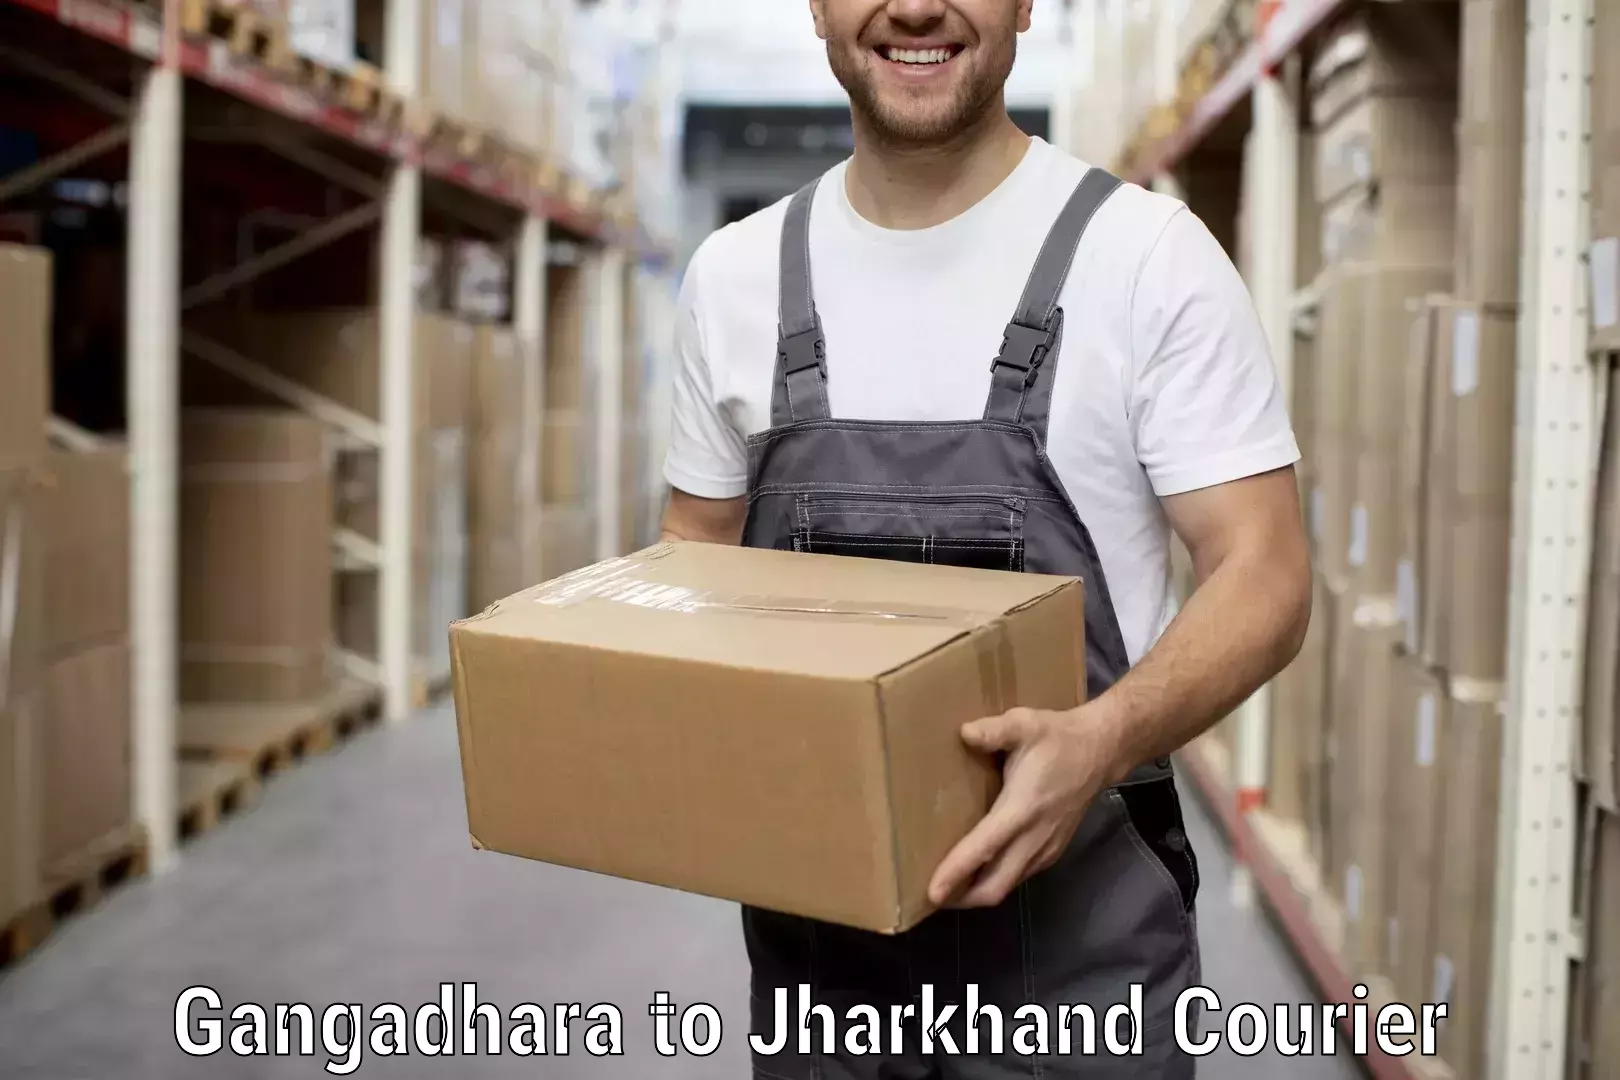 Quality moving company Gangadhara to Bagodar